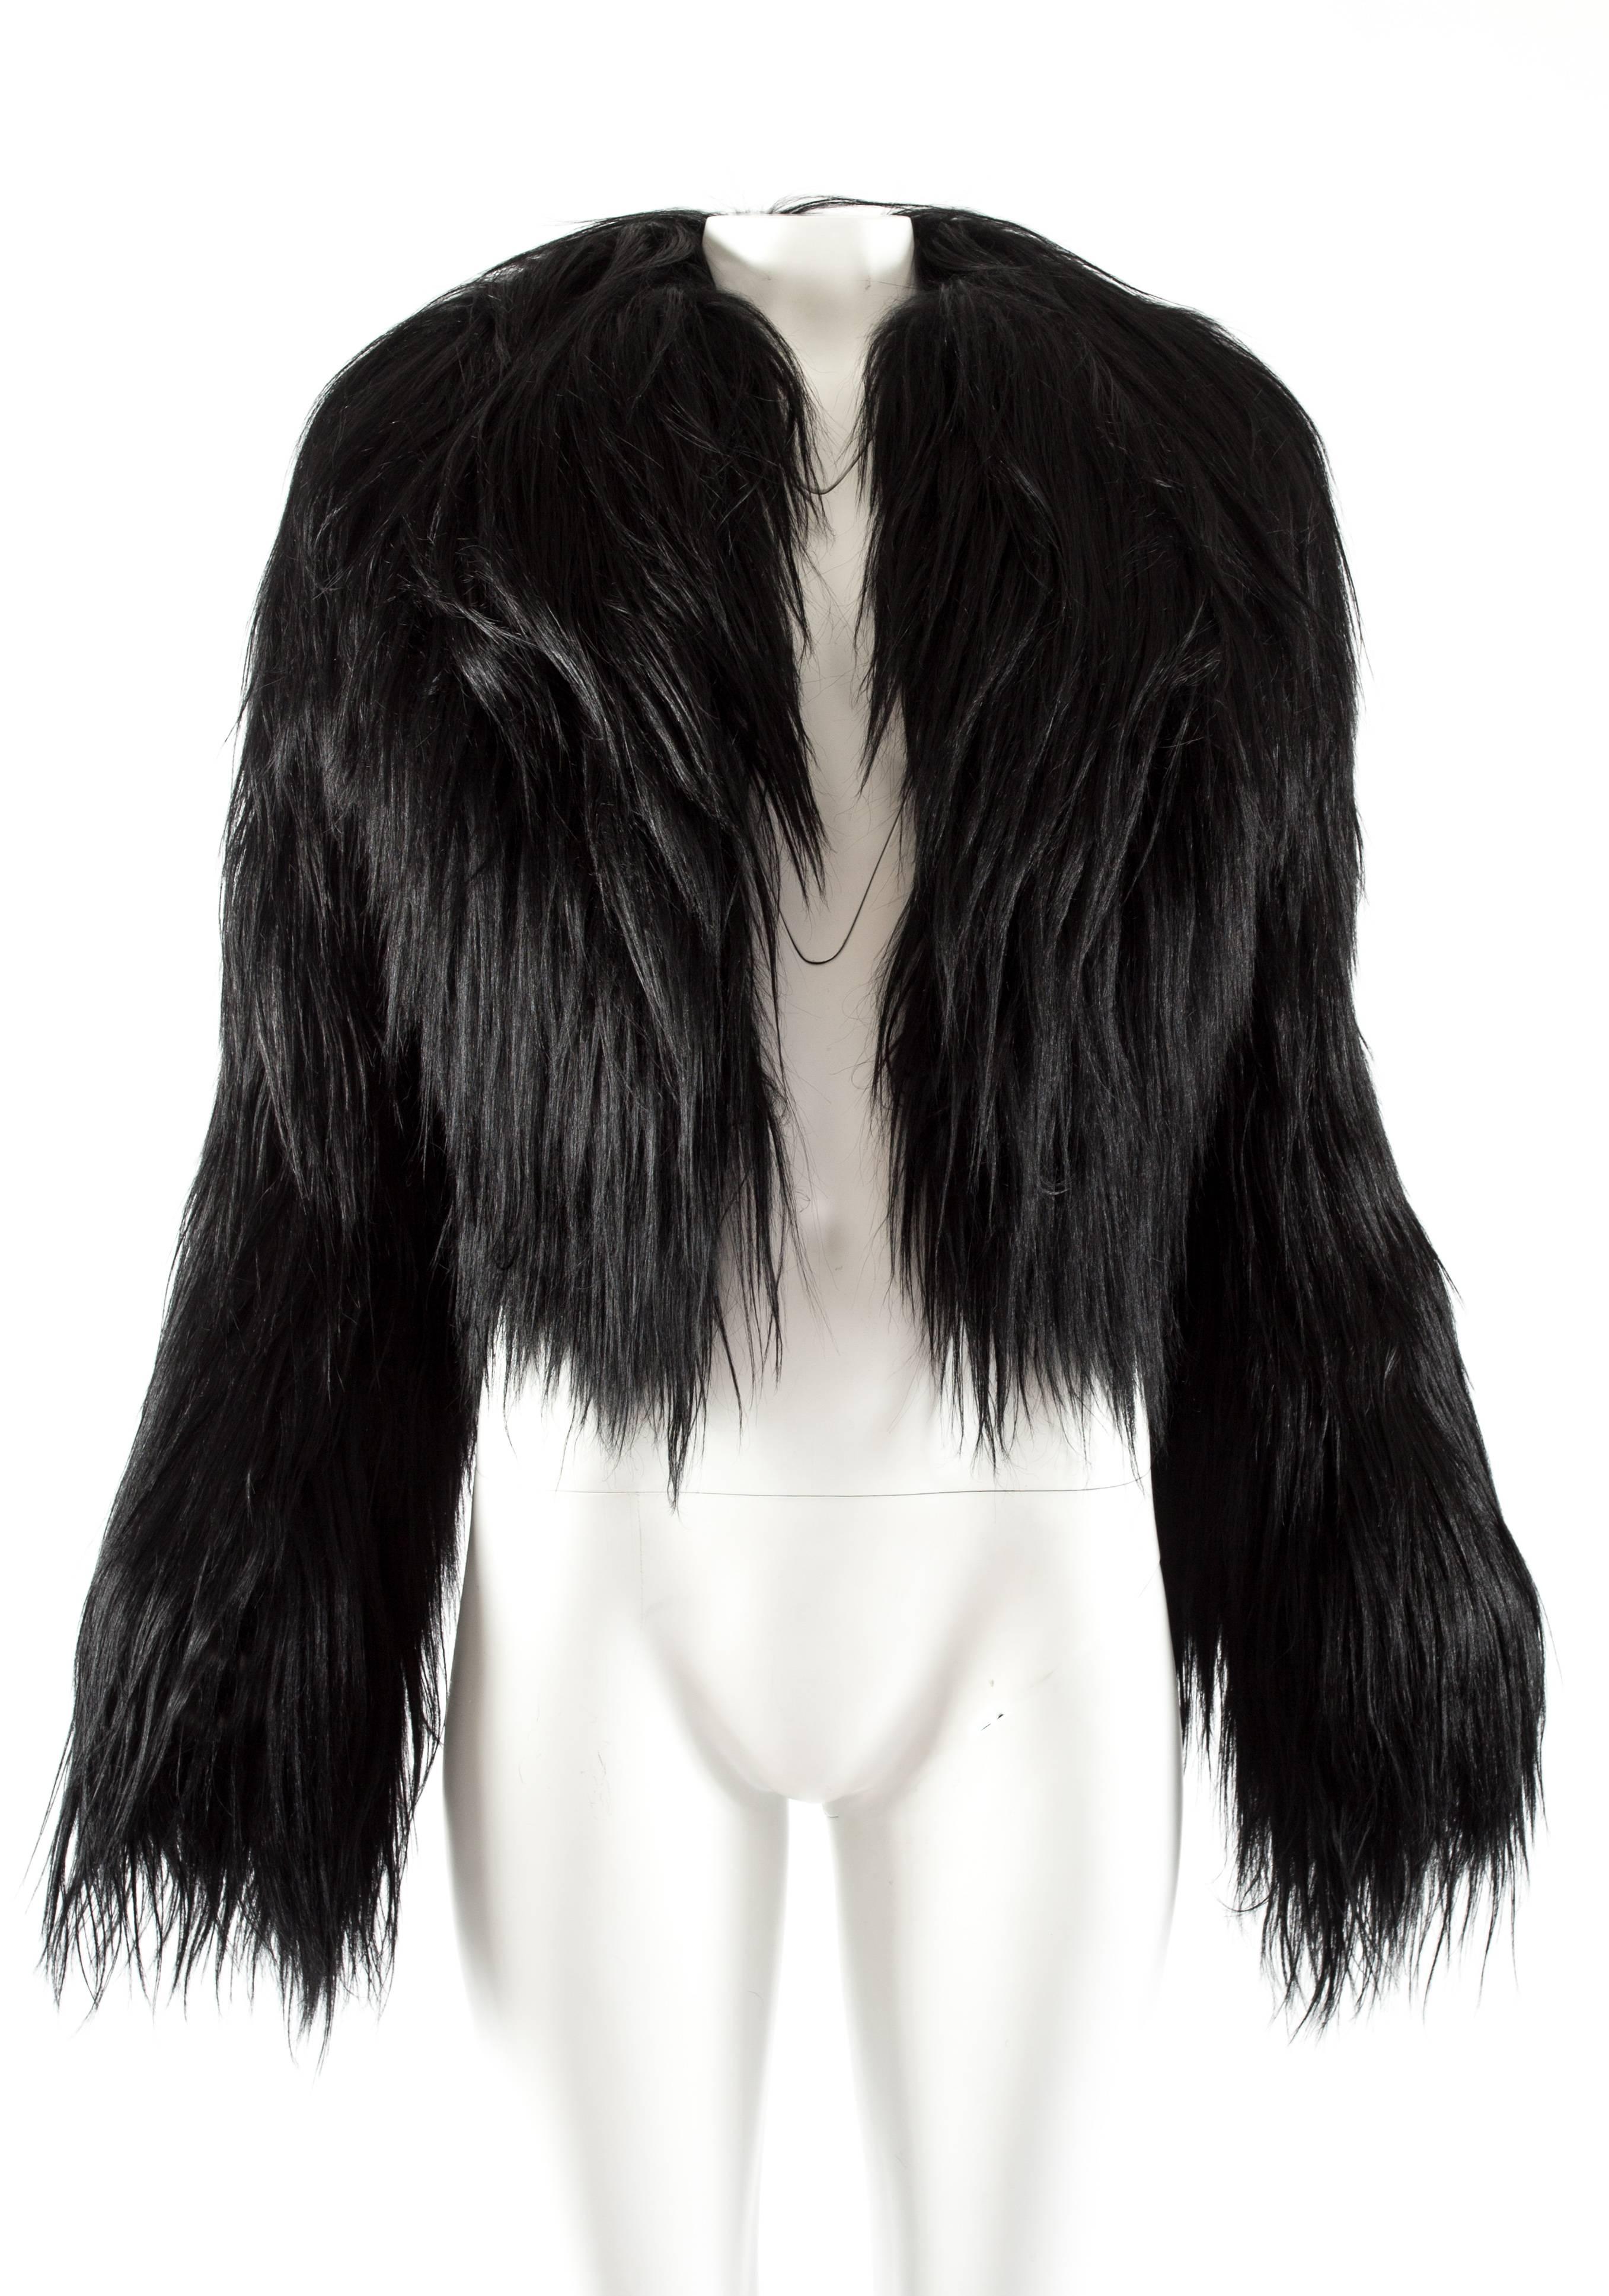 Voici la veste en poils de chèvre noirs Azzedine Alaia, une pièce luxueuse et exquise qui illustre la maîtrise du créateur dans la création d'une mode intemporelle et sophistiquée.

Confectionnée dans un somptueux poil de chèvre d'un noir éclatant,